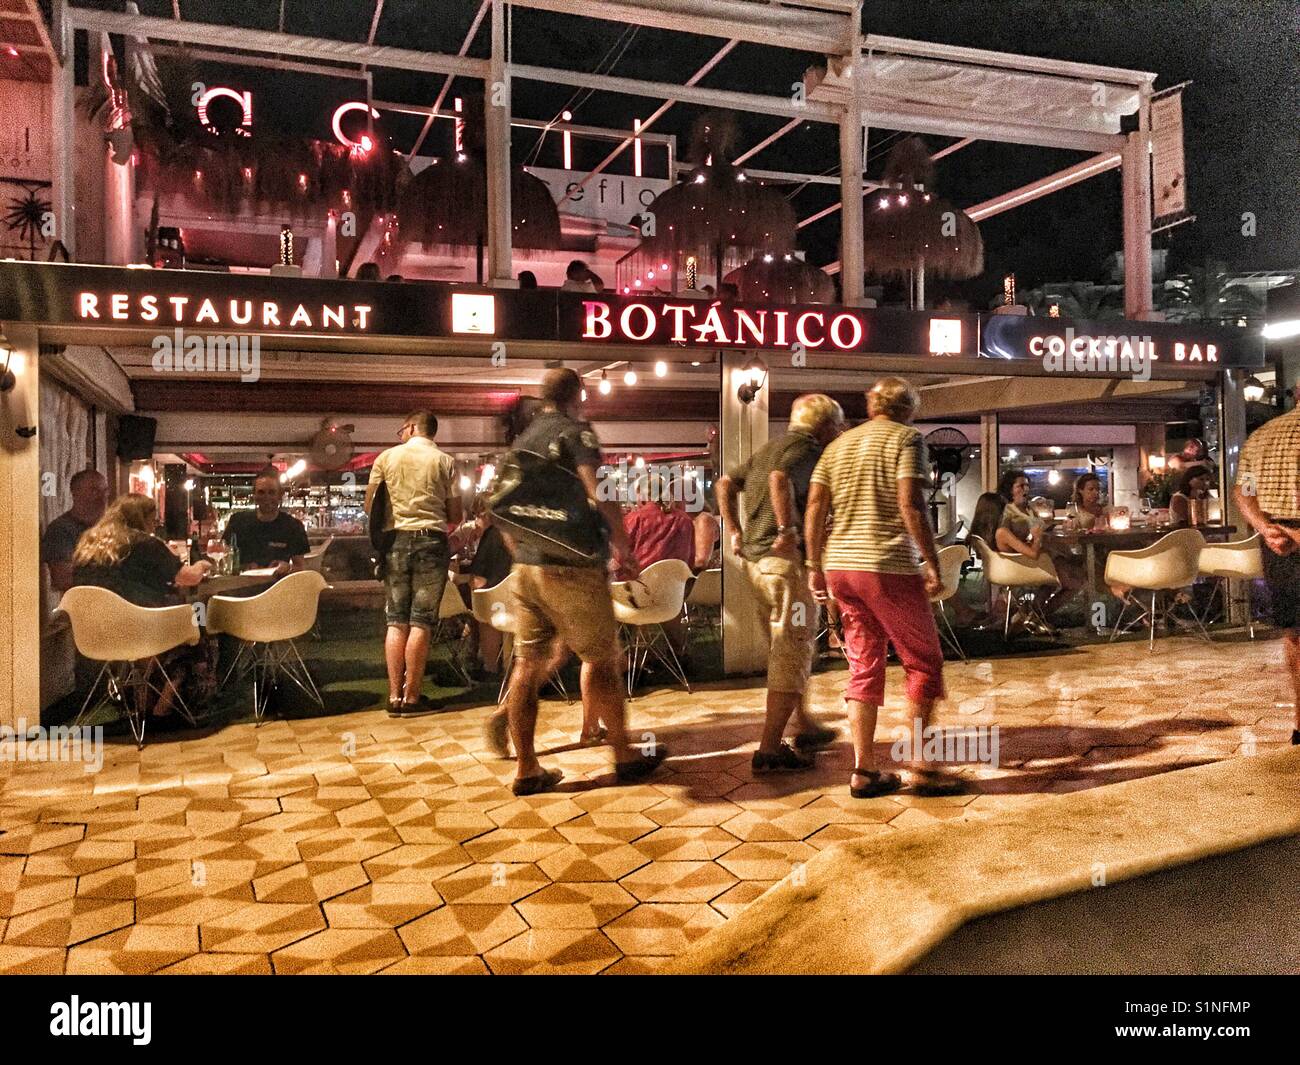 Restaurante Botanico Cocktail Bar en la playa del Arenal de Jávea, Alicante,  España. La noche con turistas Fotografía de stock - Alamy